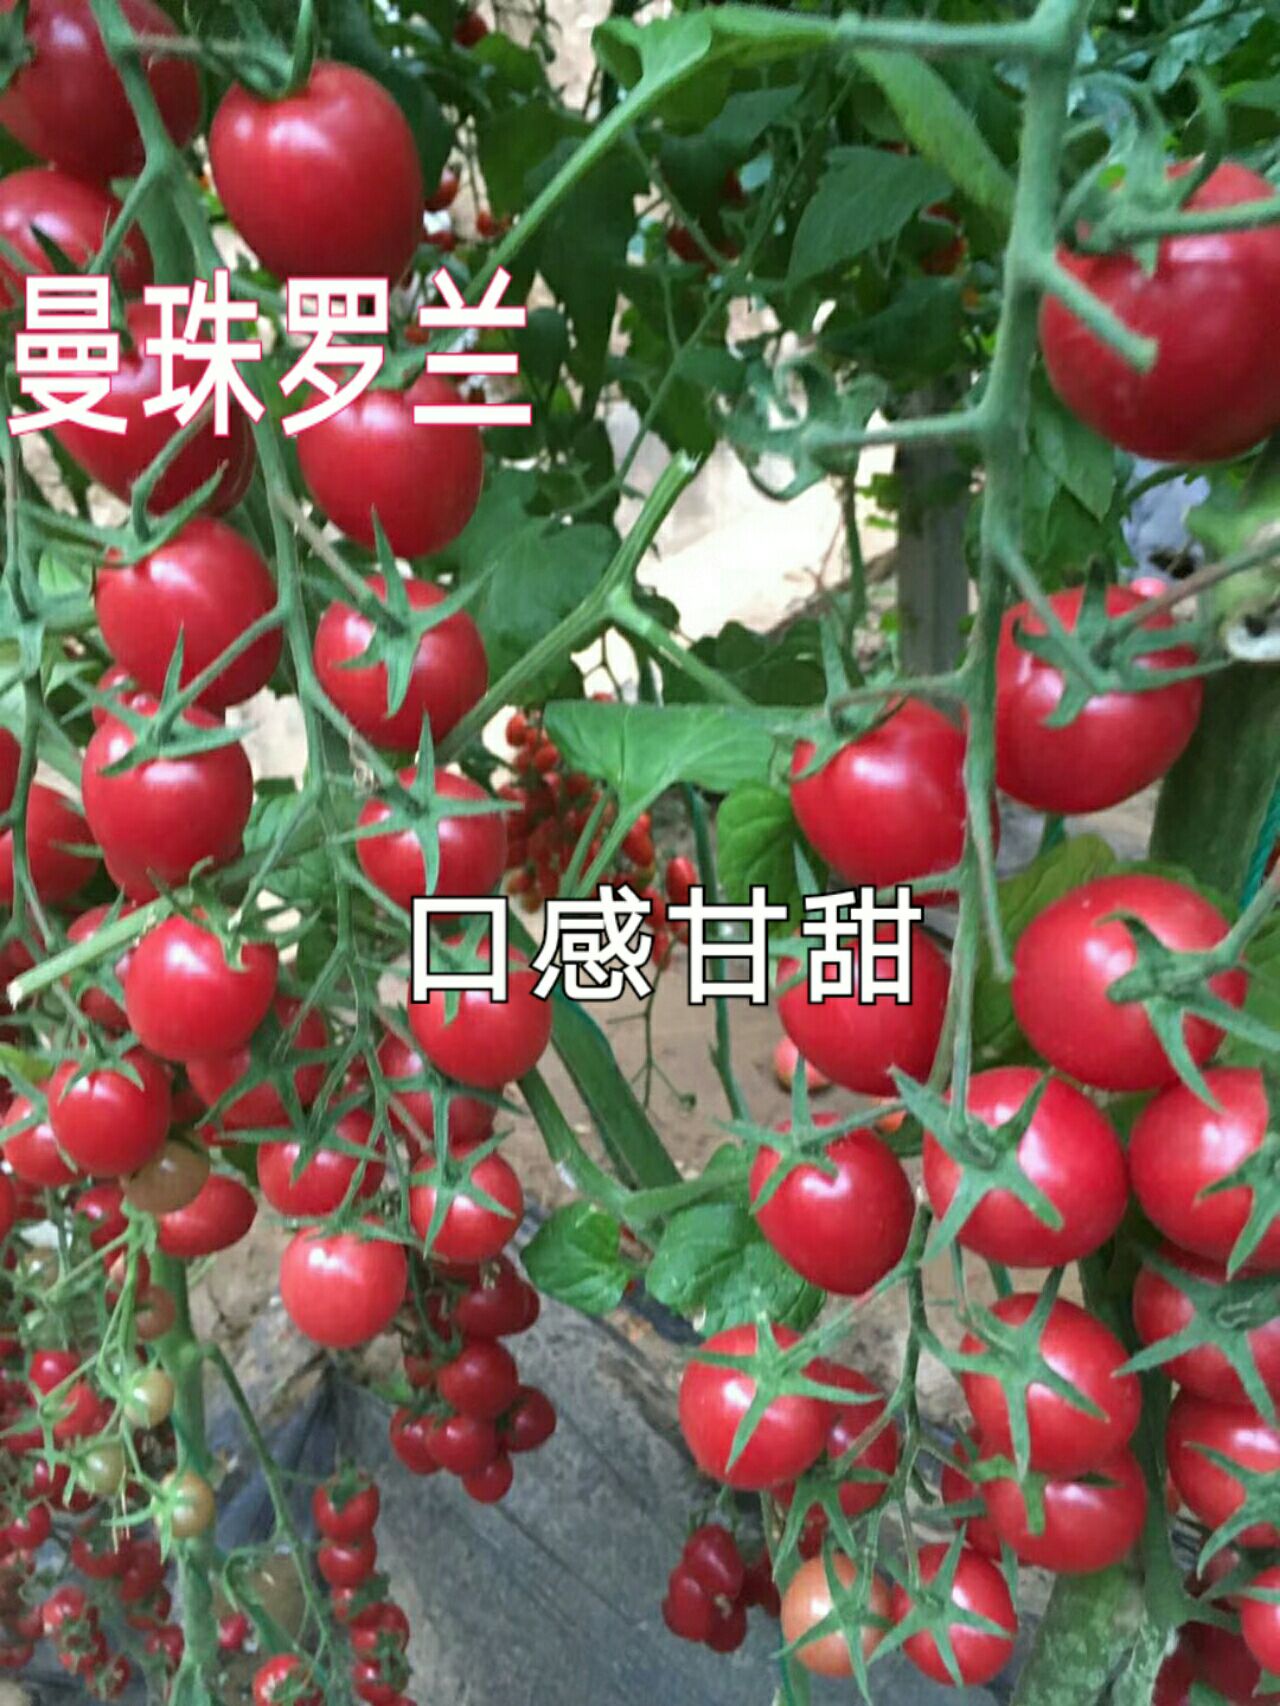 寿光市樱桃番茄种子 高端千禧种子-口感甘甜